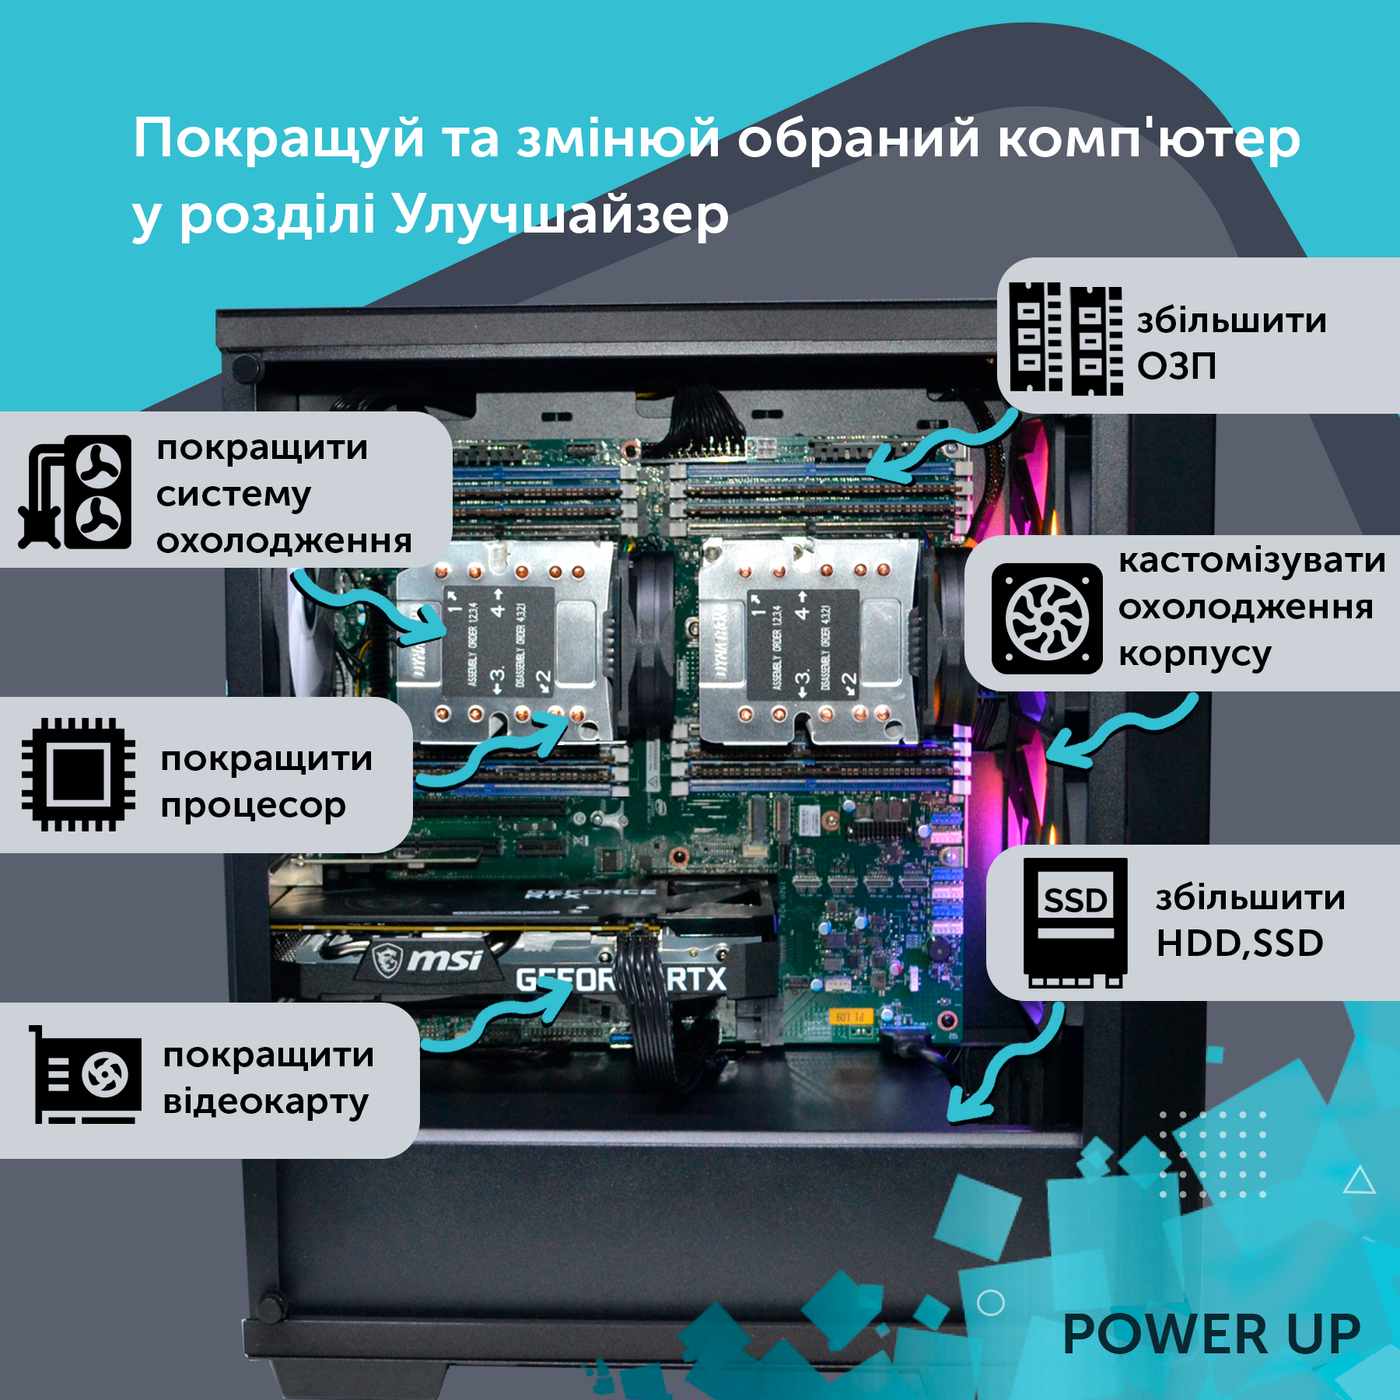 Рабочая станция PowerUp Desktop #217 Core i7 13700K/32 GB/SSD 1TB/NVIDIA Quadro M4000 8GB